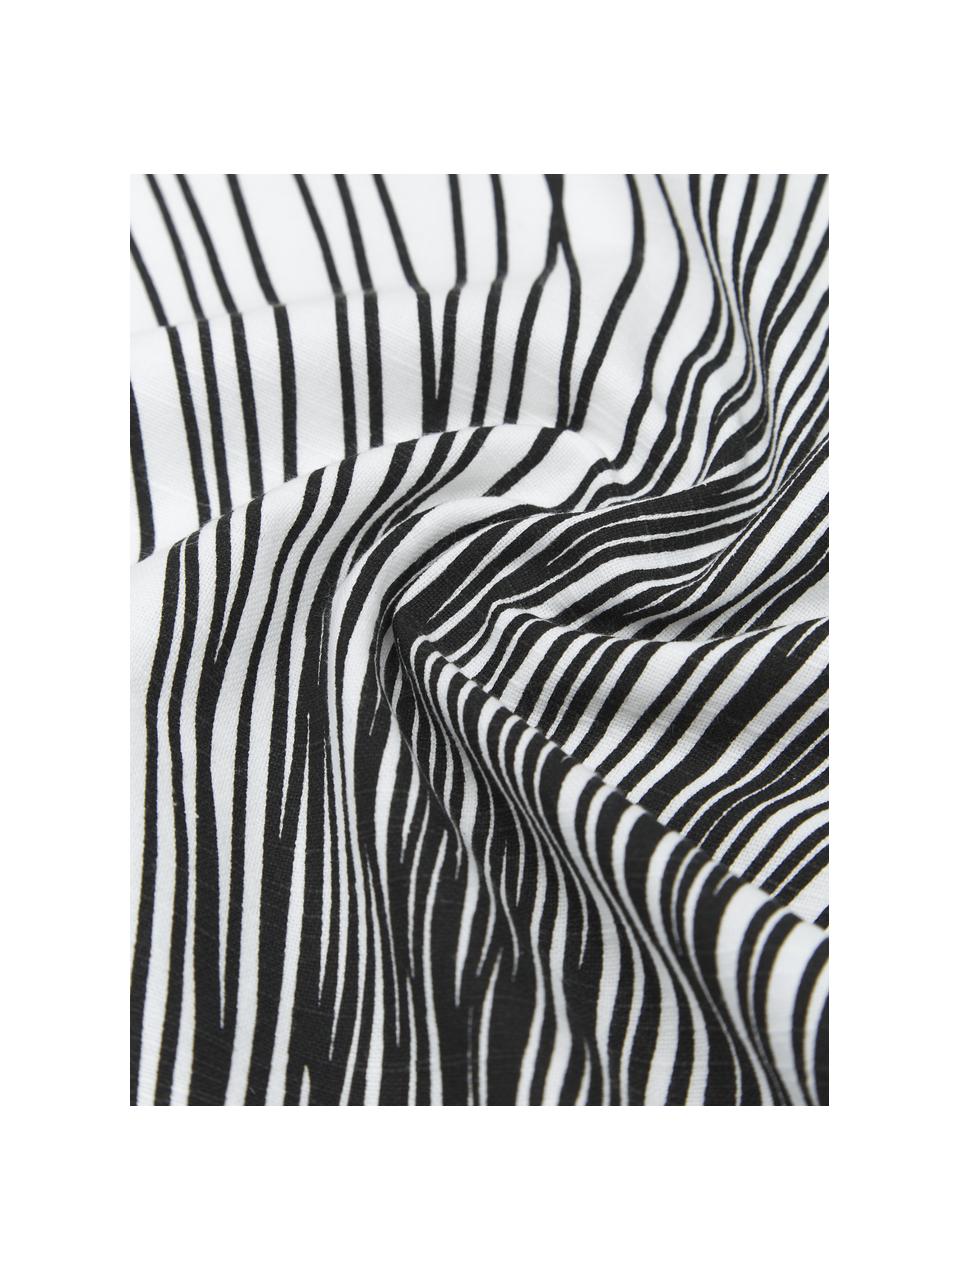 Katoenen kussenhoes Thiago in wit/zwart, 100% katoen, Wit, zwart, B 50 x L 50 cm